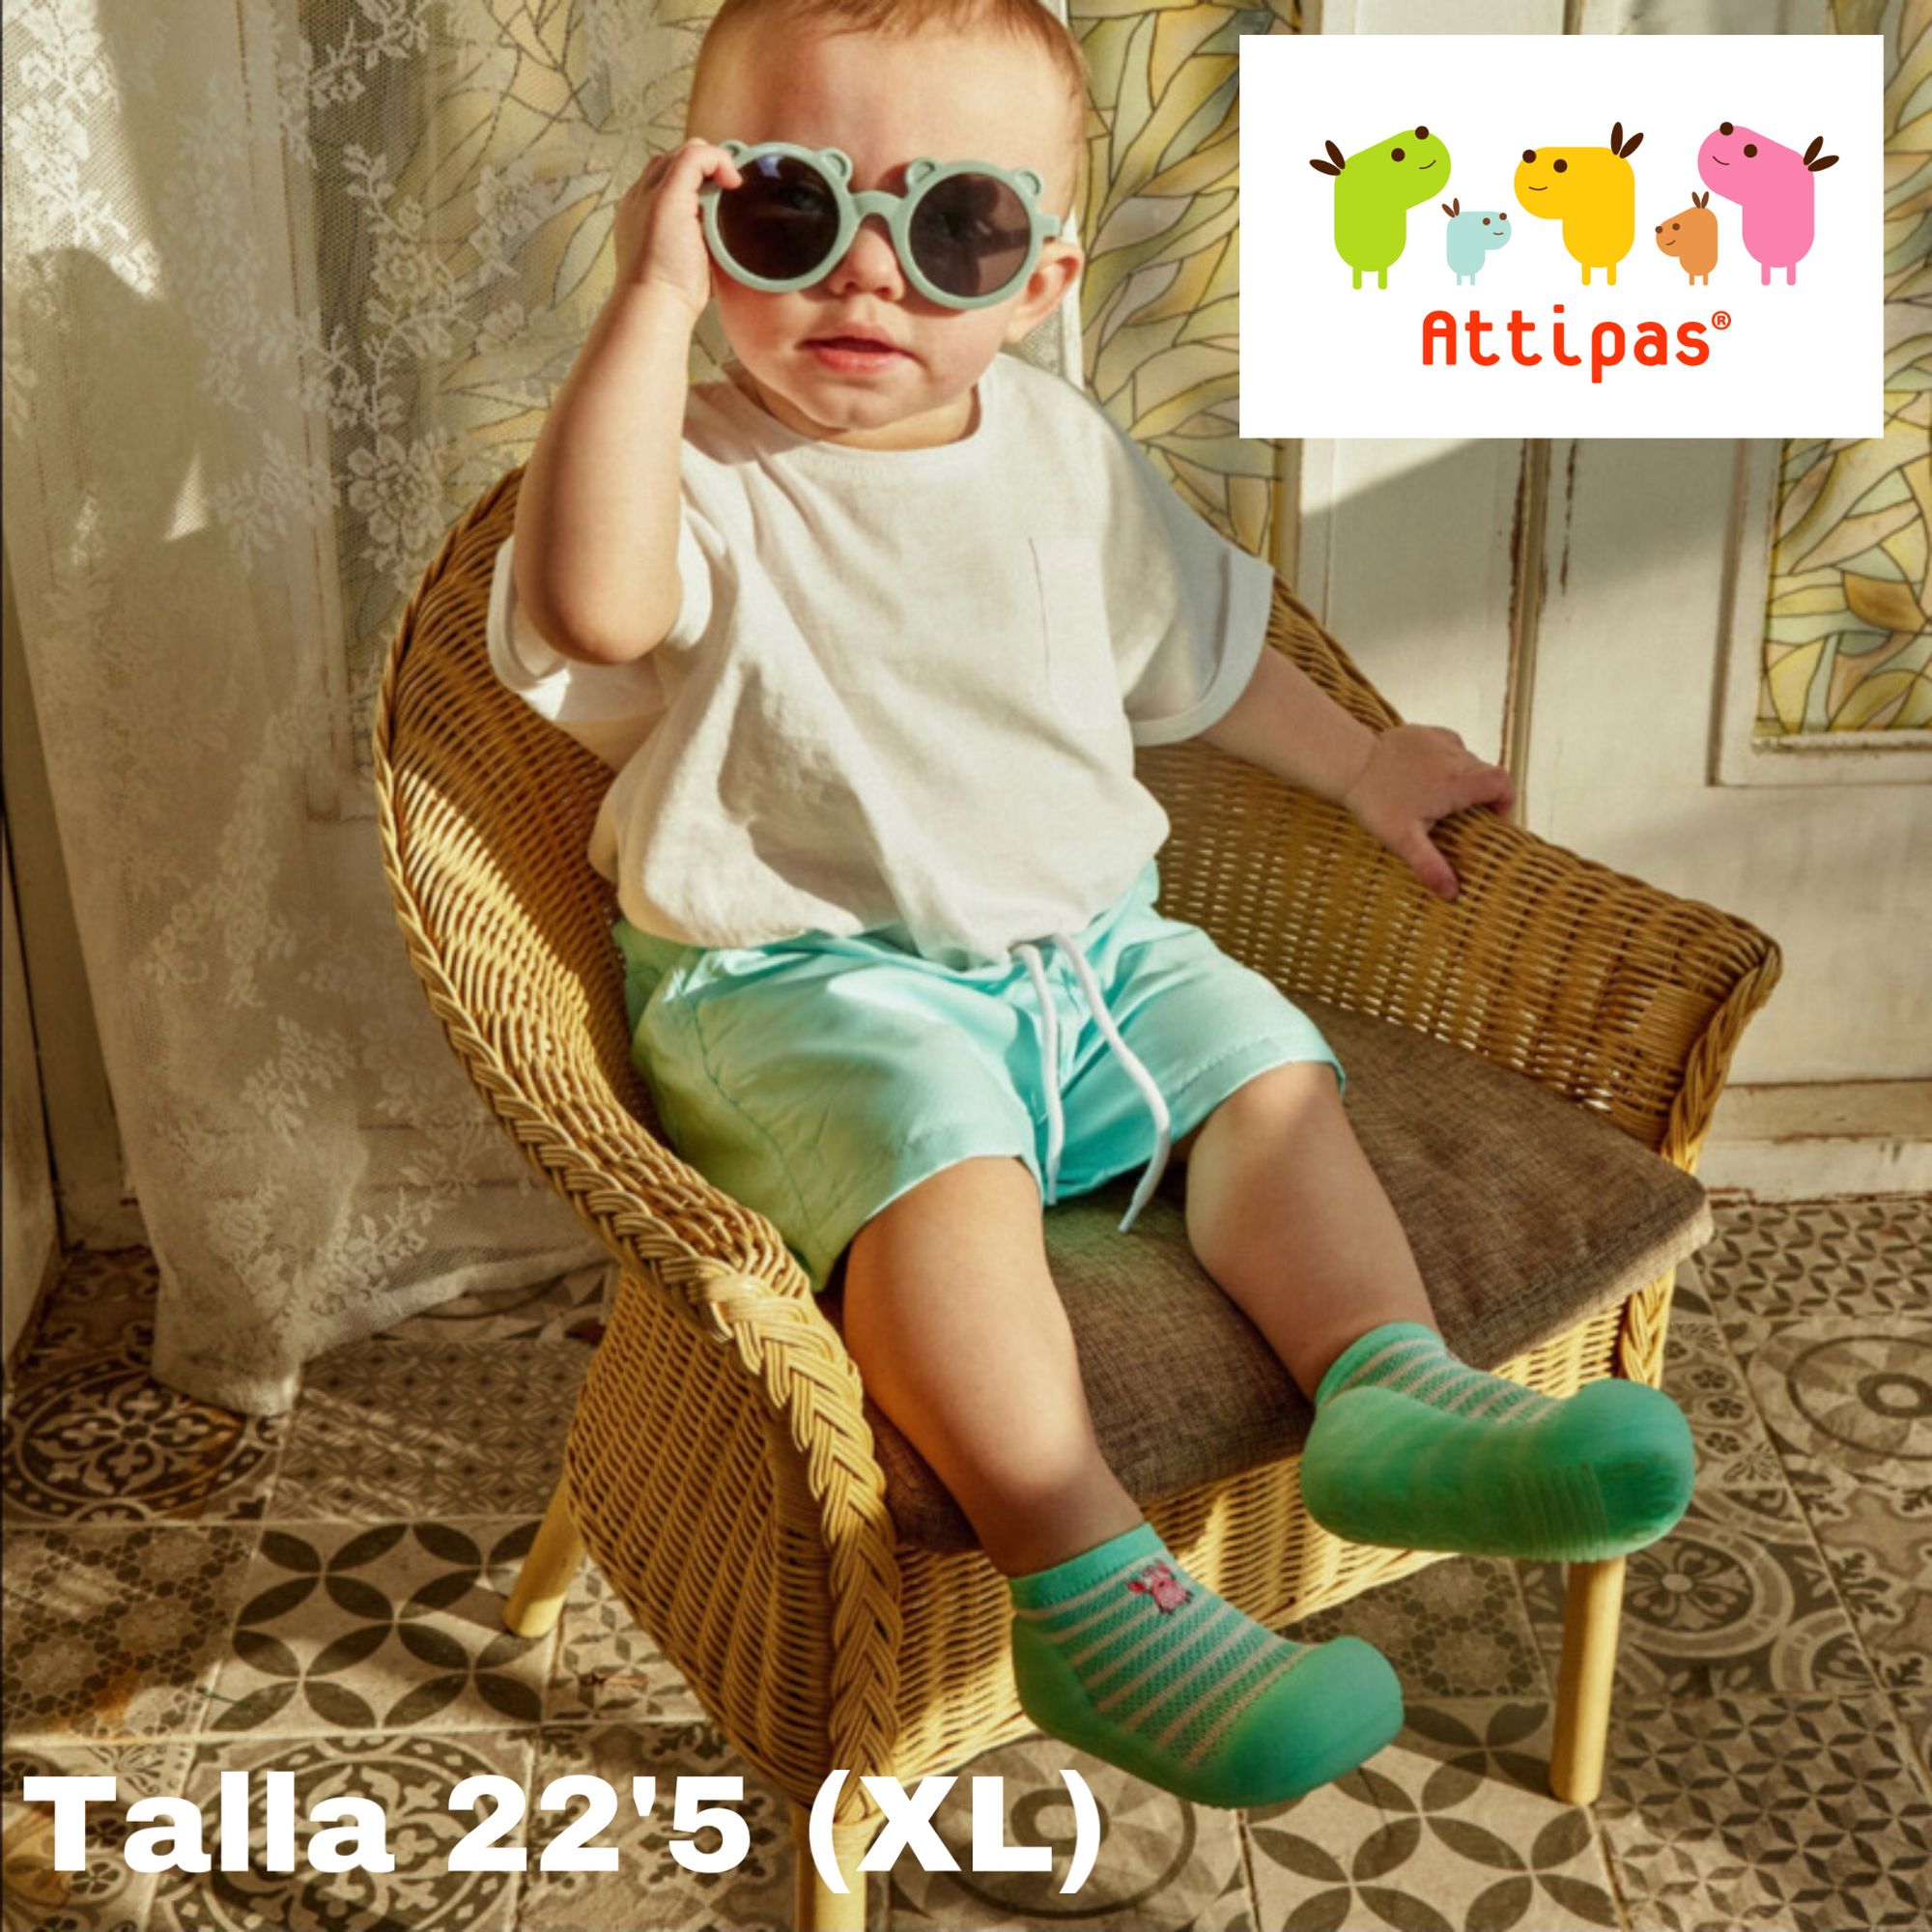 Calzado suela blanda Attipas Verano (XL) - Nordic Baby